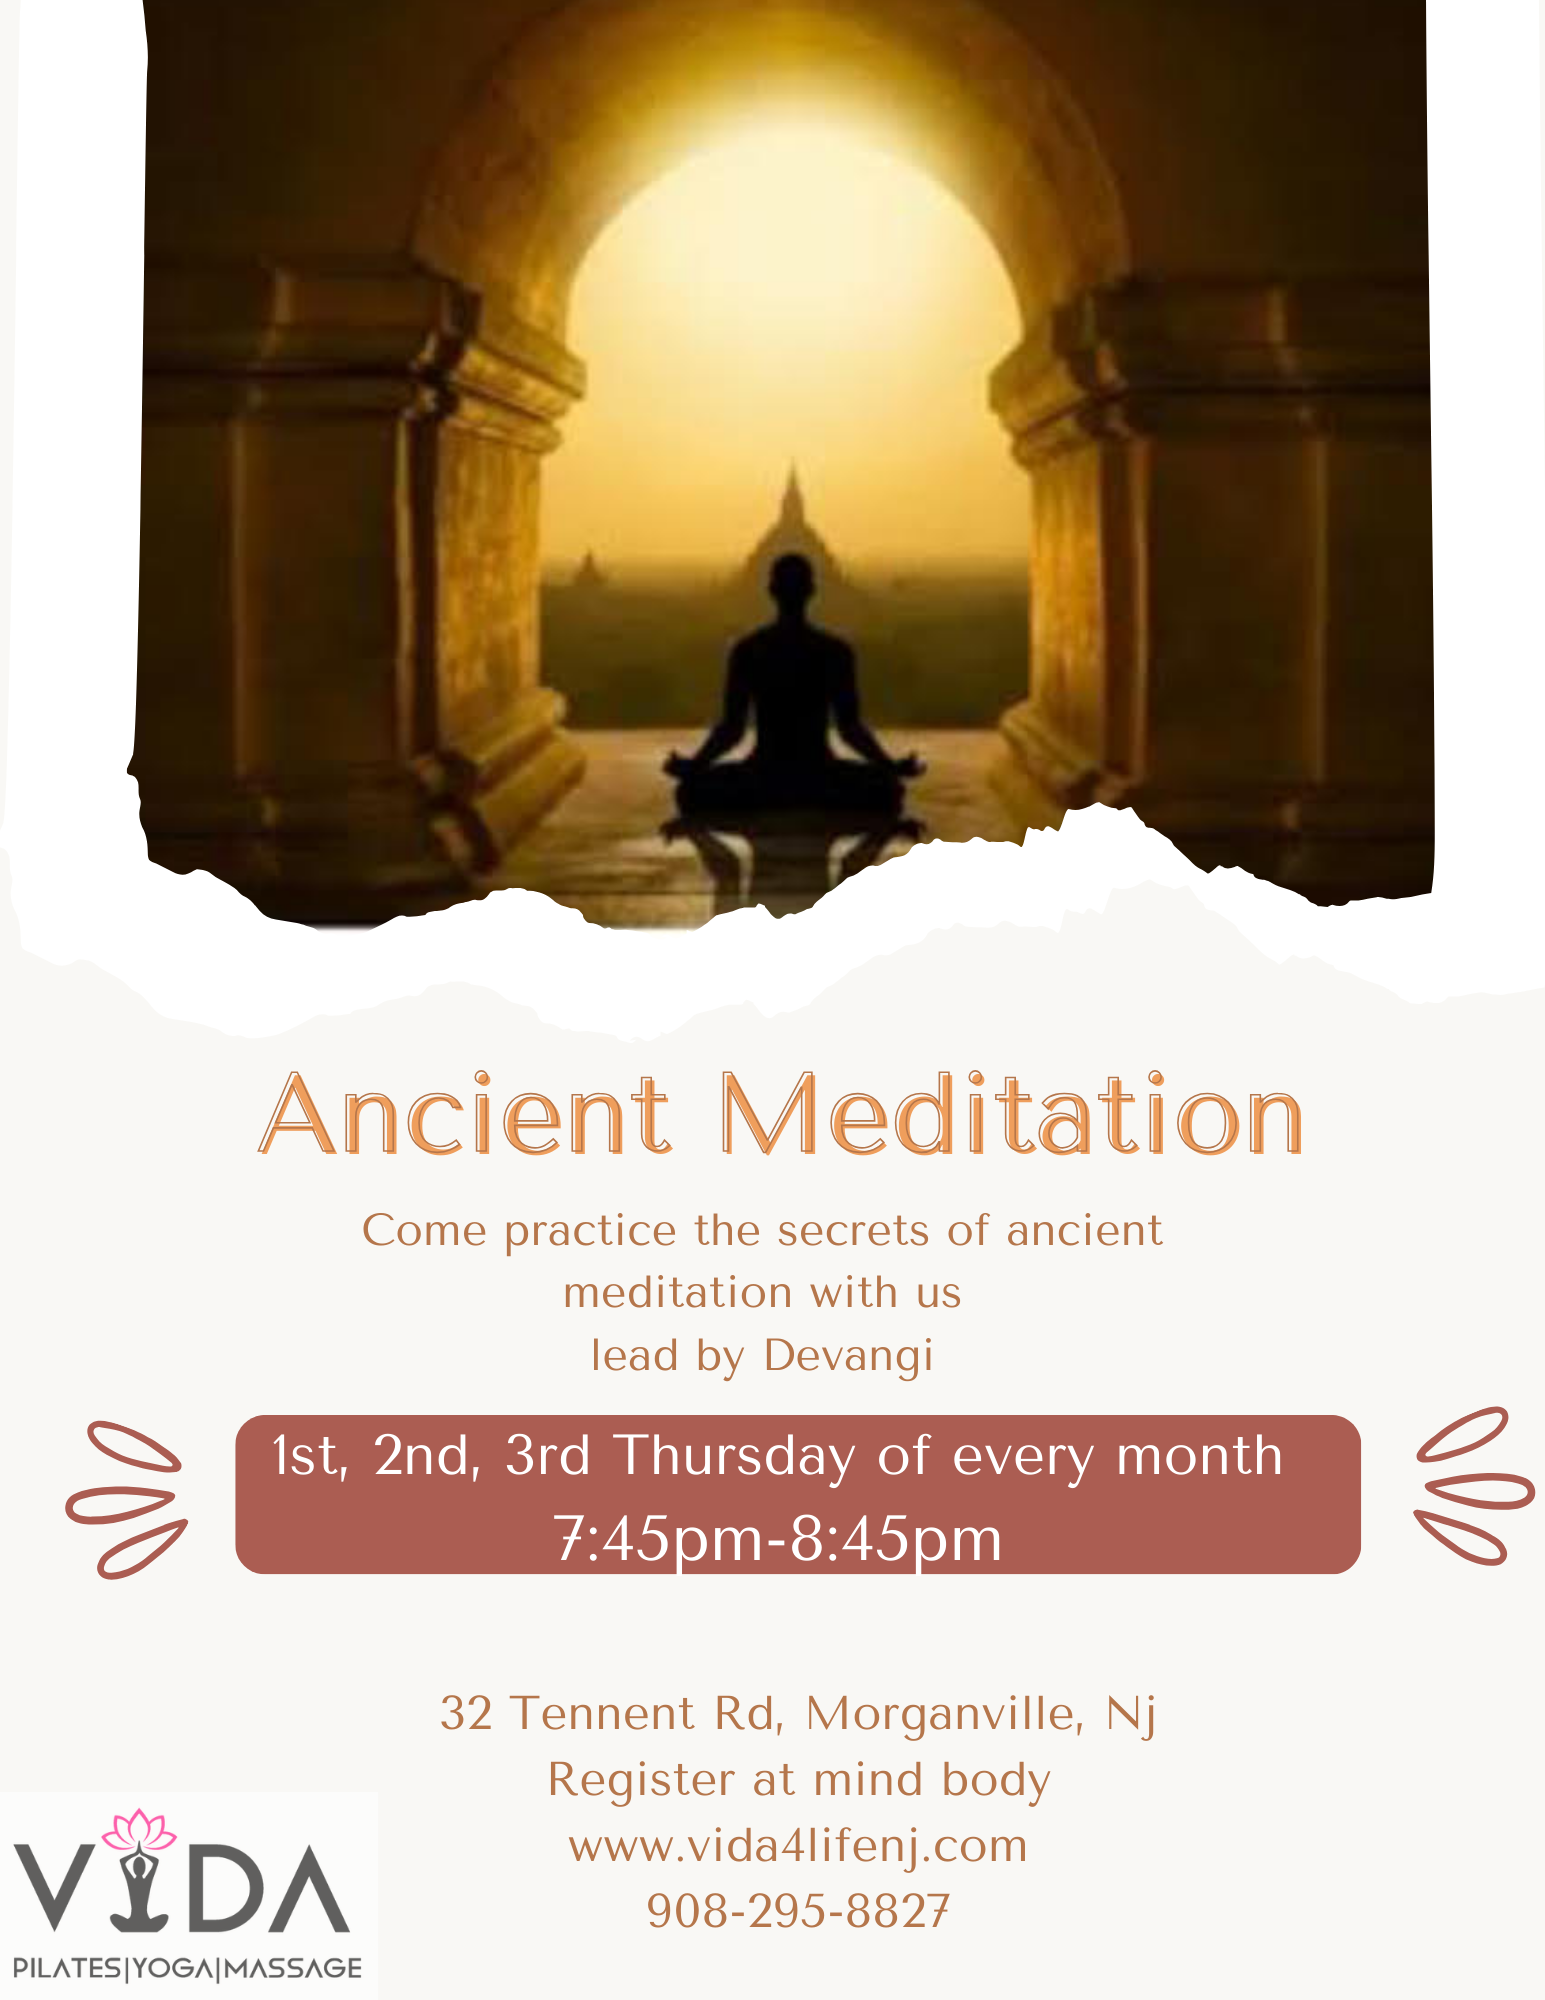 Ancient Meditation Flyer — Morganville, NJ — Vida Holistic Wellness